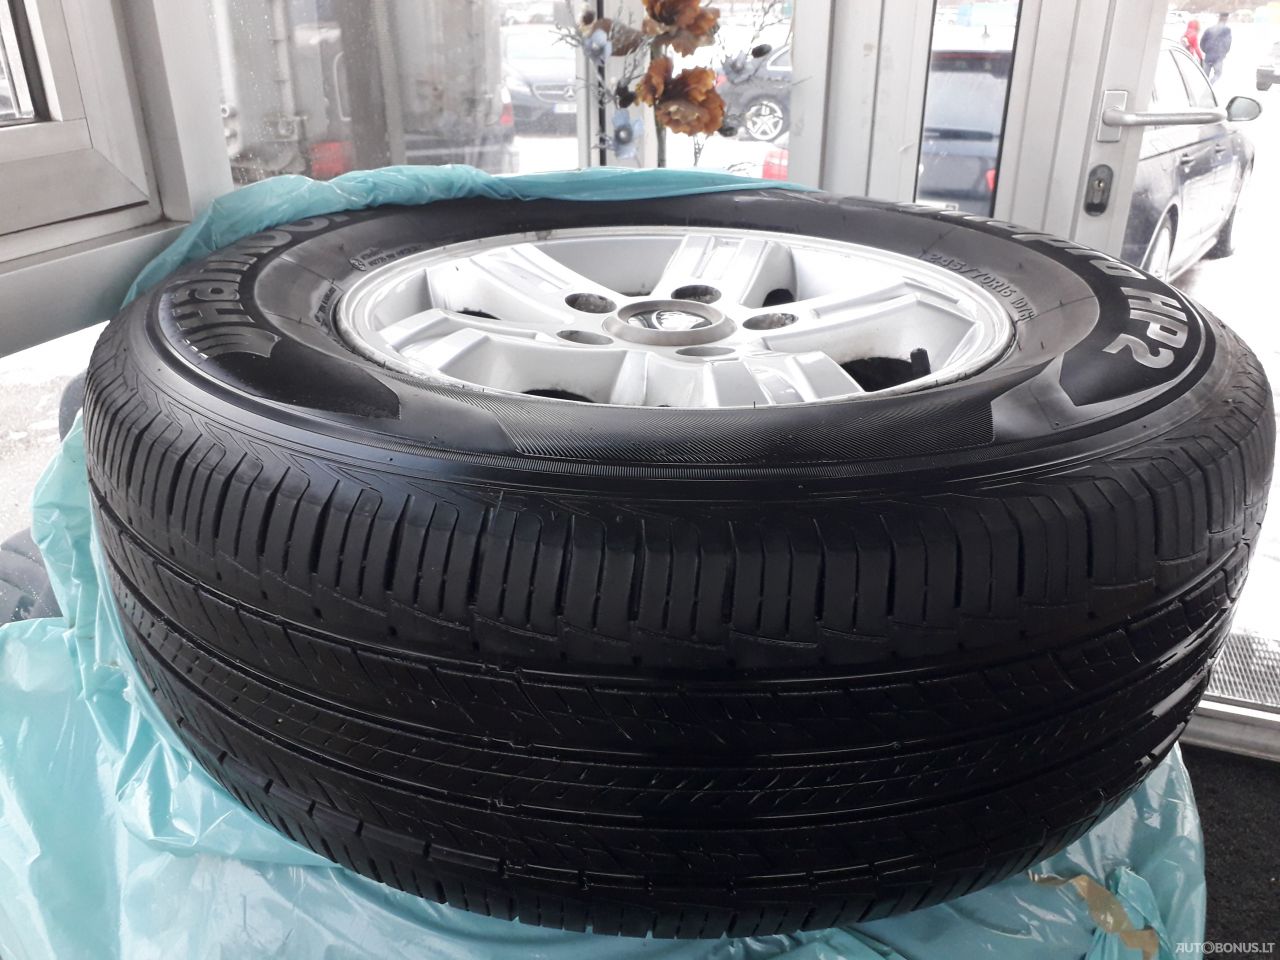 Hankook Radial Tubeless M+s summer tyres | 6